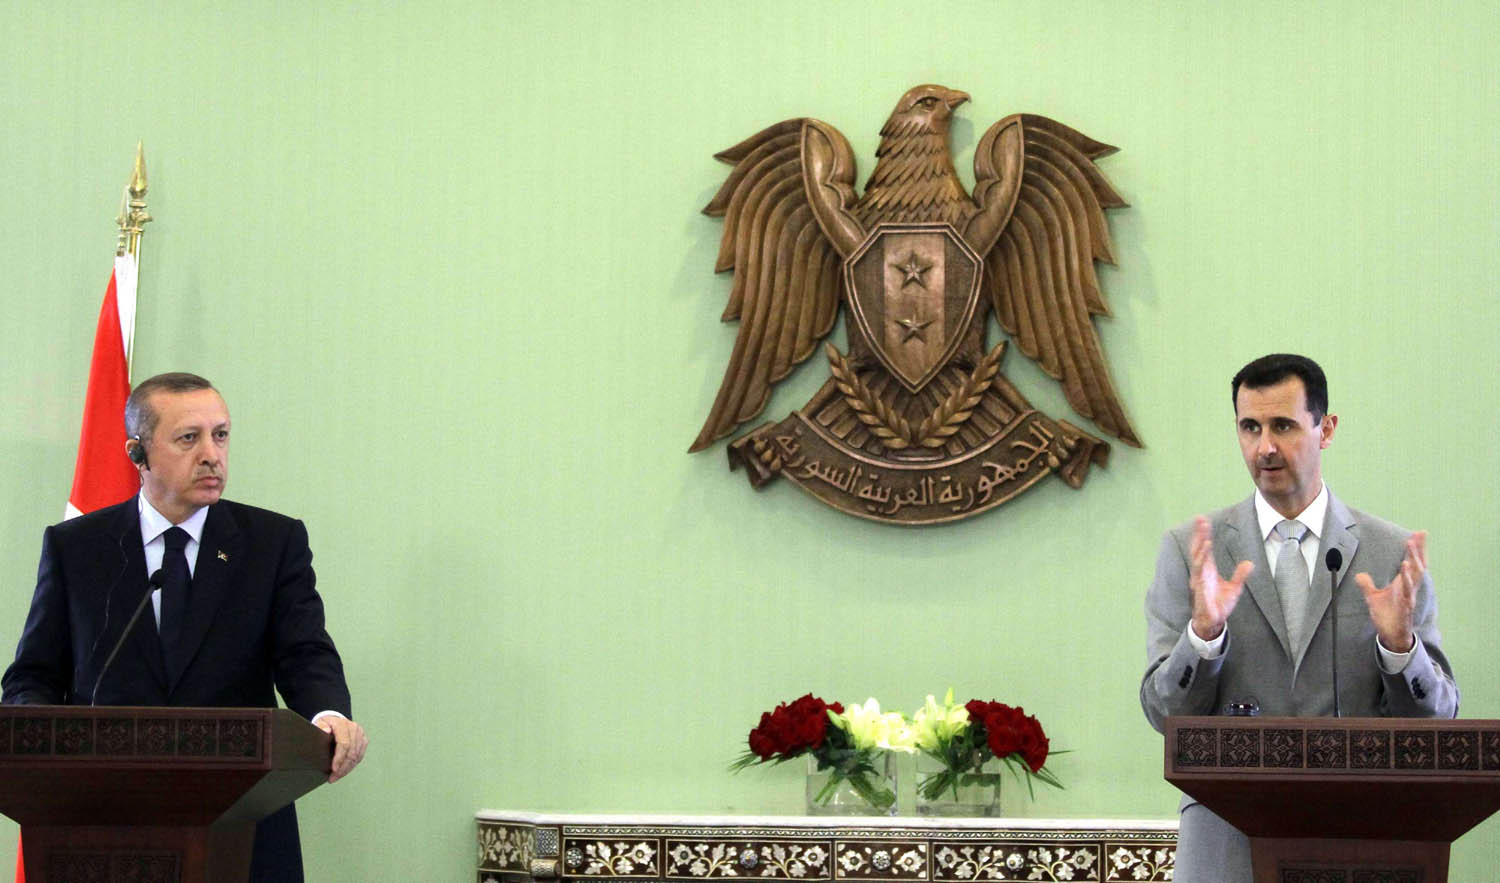 الرئيس السوري بشار الأسد والرئيس التركي رجب طيب أردوغان في لقاء في دمشق (أكتوبر 2010)